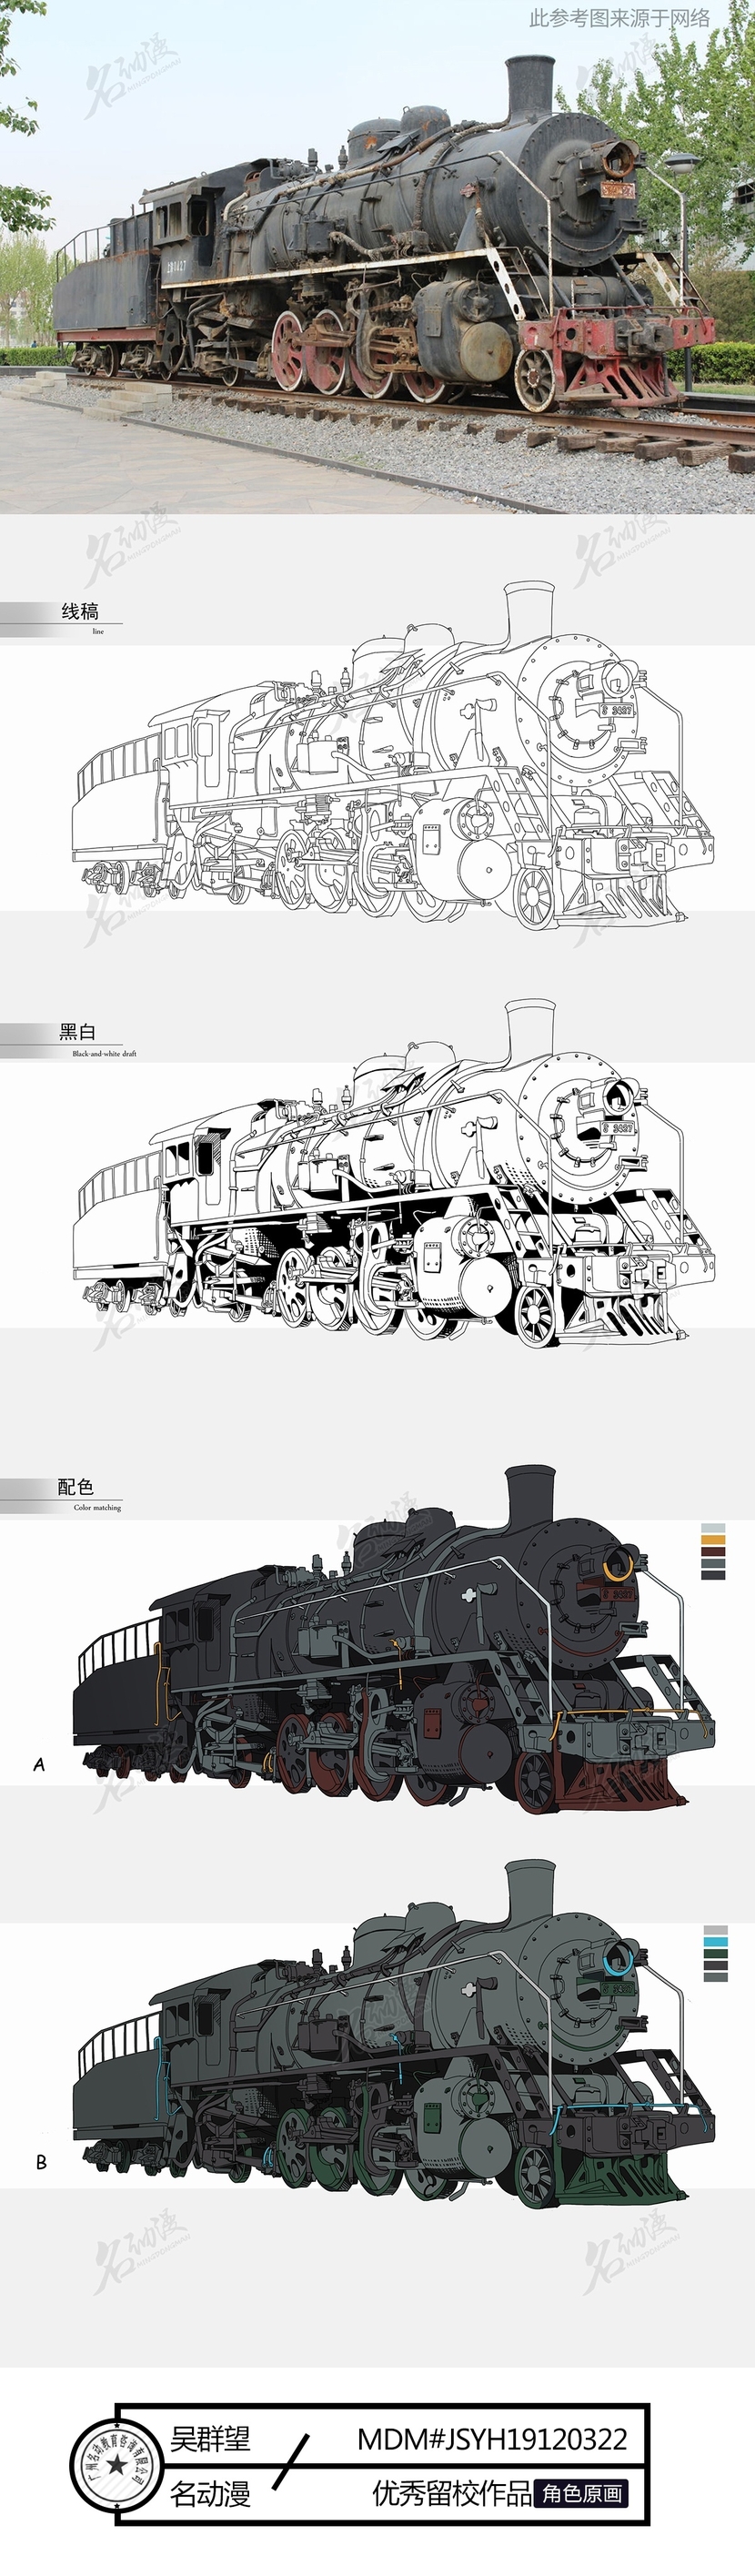 蒸汽火车插画图片壁纸